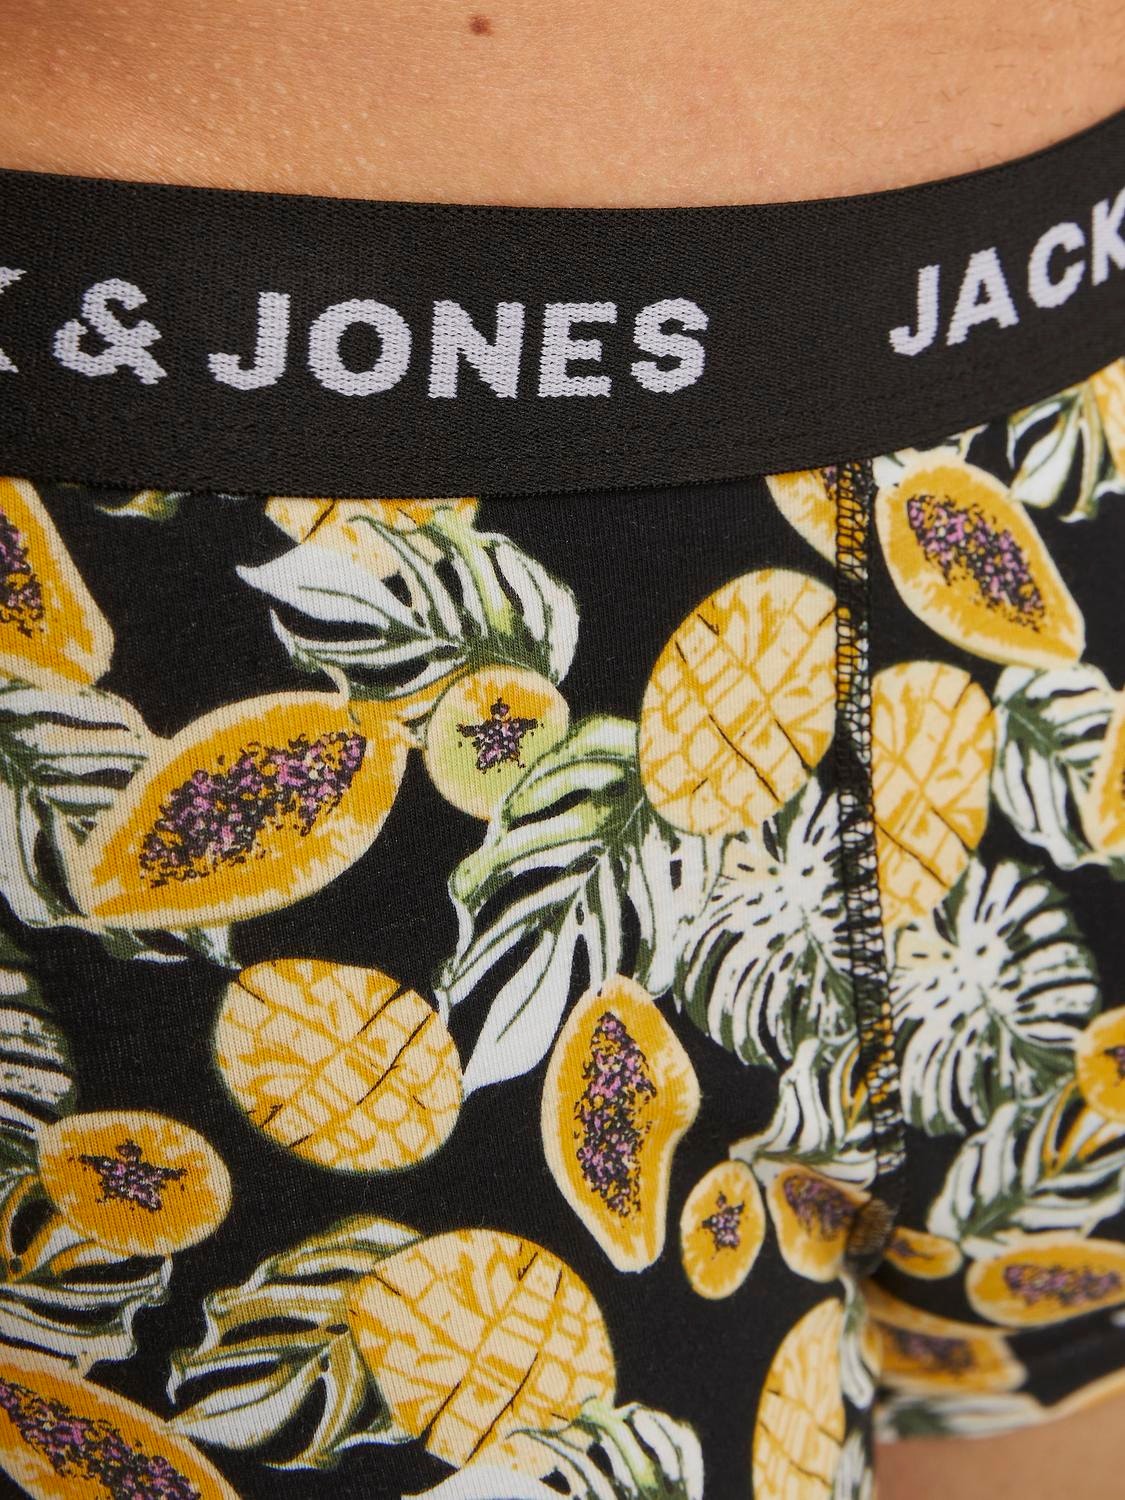 Jack & Jones Pack de 5 Boxers -Black - 12259344